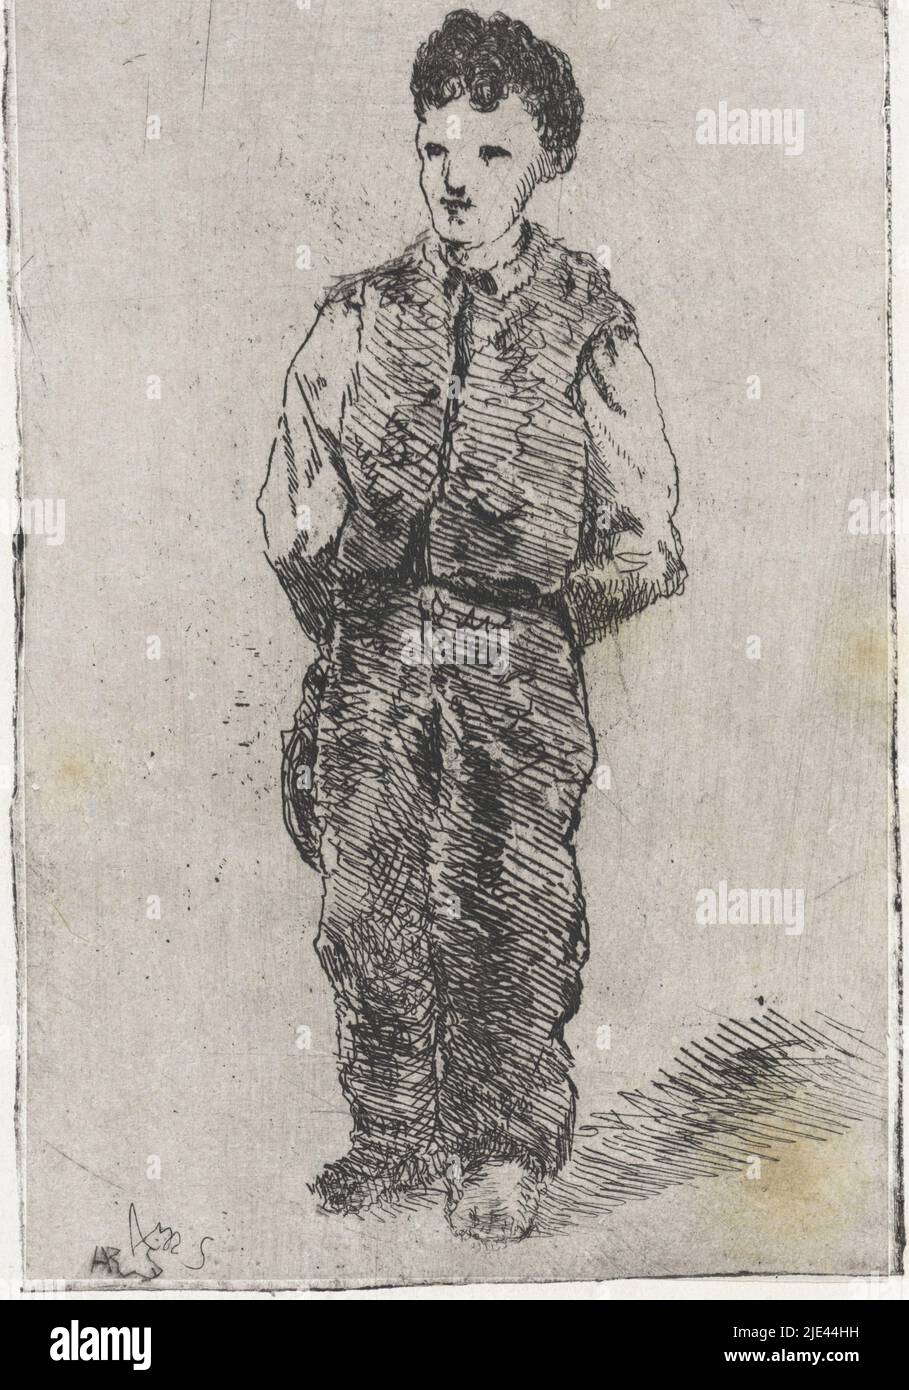 Junger Mann in Overalls, Arnoud Schaepkens, 1831 - 1904, Druckerei: Arnoud Schaepkens, (auf Objekt erwähnt), 1831 - 1904, Papier, Radierung, Trockenpunkt, H 142 mm × B 90 mm Stockfoto